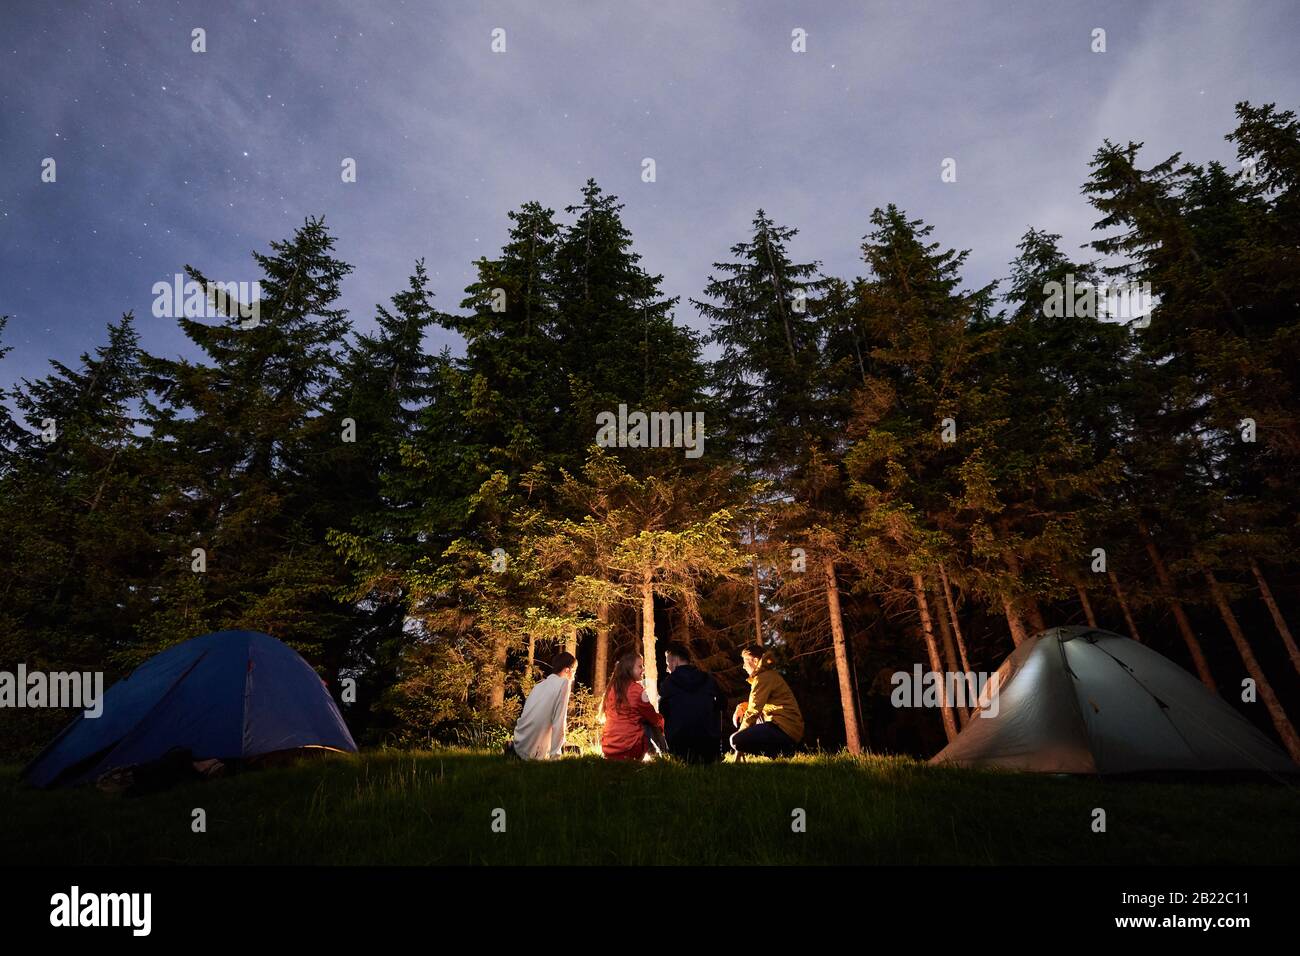 Camping de nuit près d'un feu de camp sur fond d'une forêt puissante. Quatre personnes assises près du feu et des tentes touristiques. Magnifiques sruces sous le ciel du soir sur lequel apparaissent les étoiles Banque D'Images